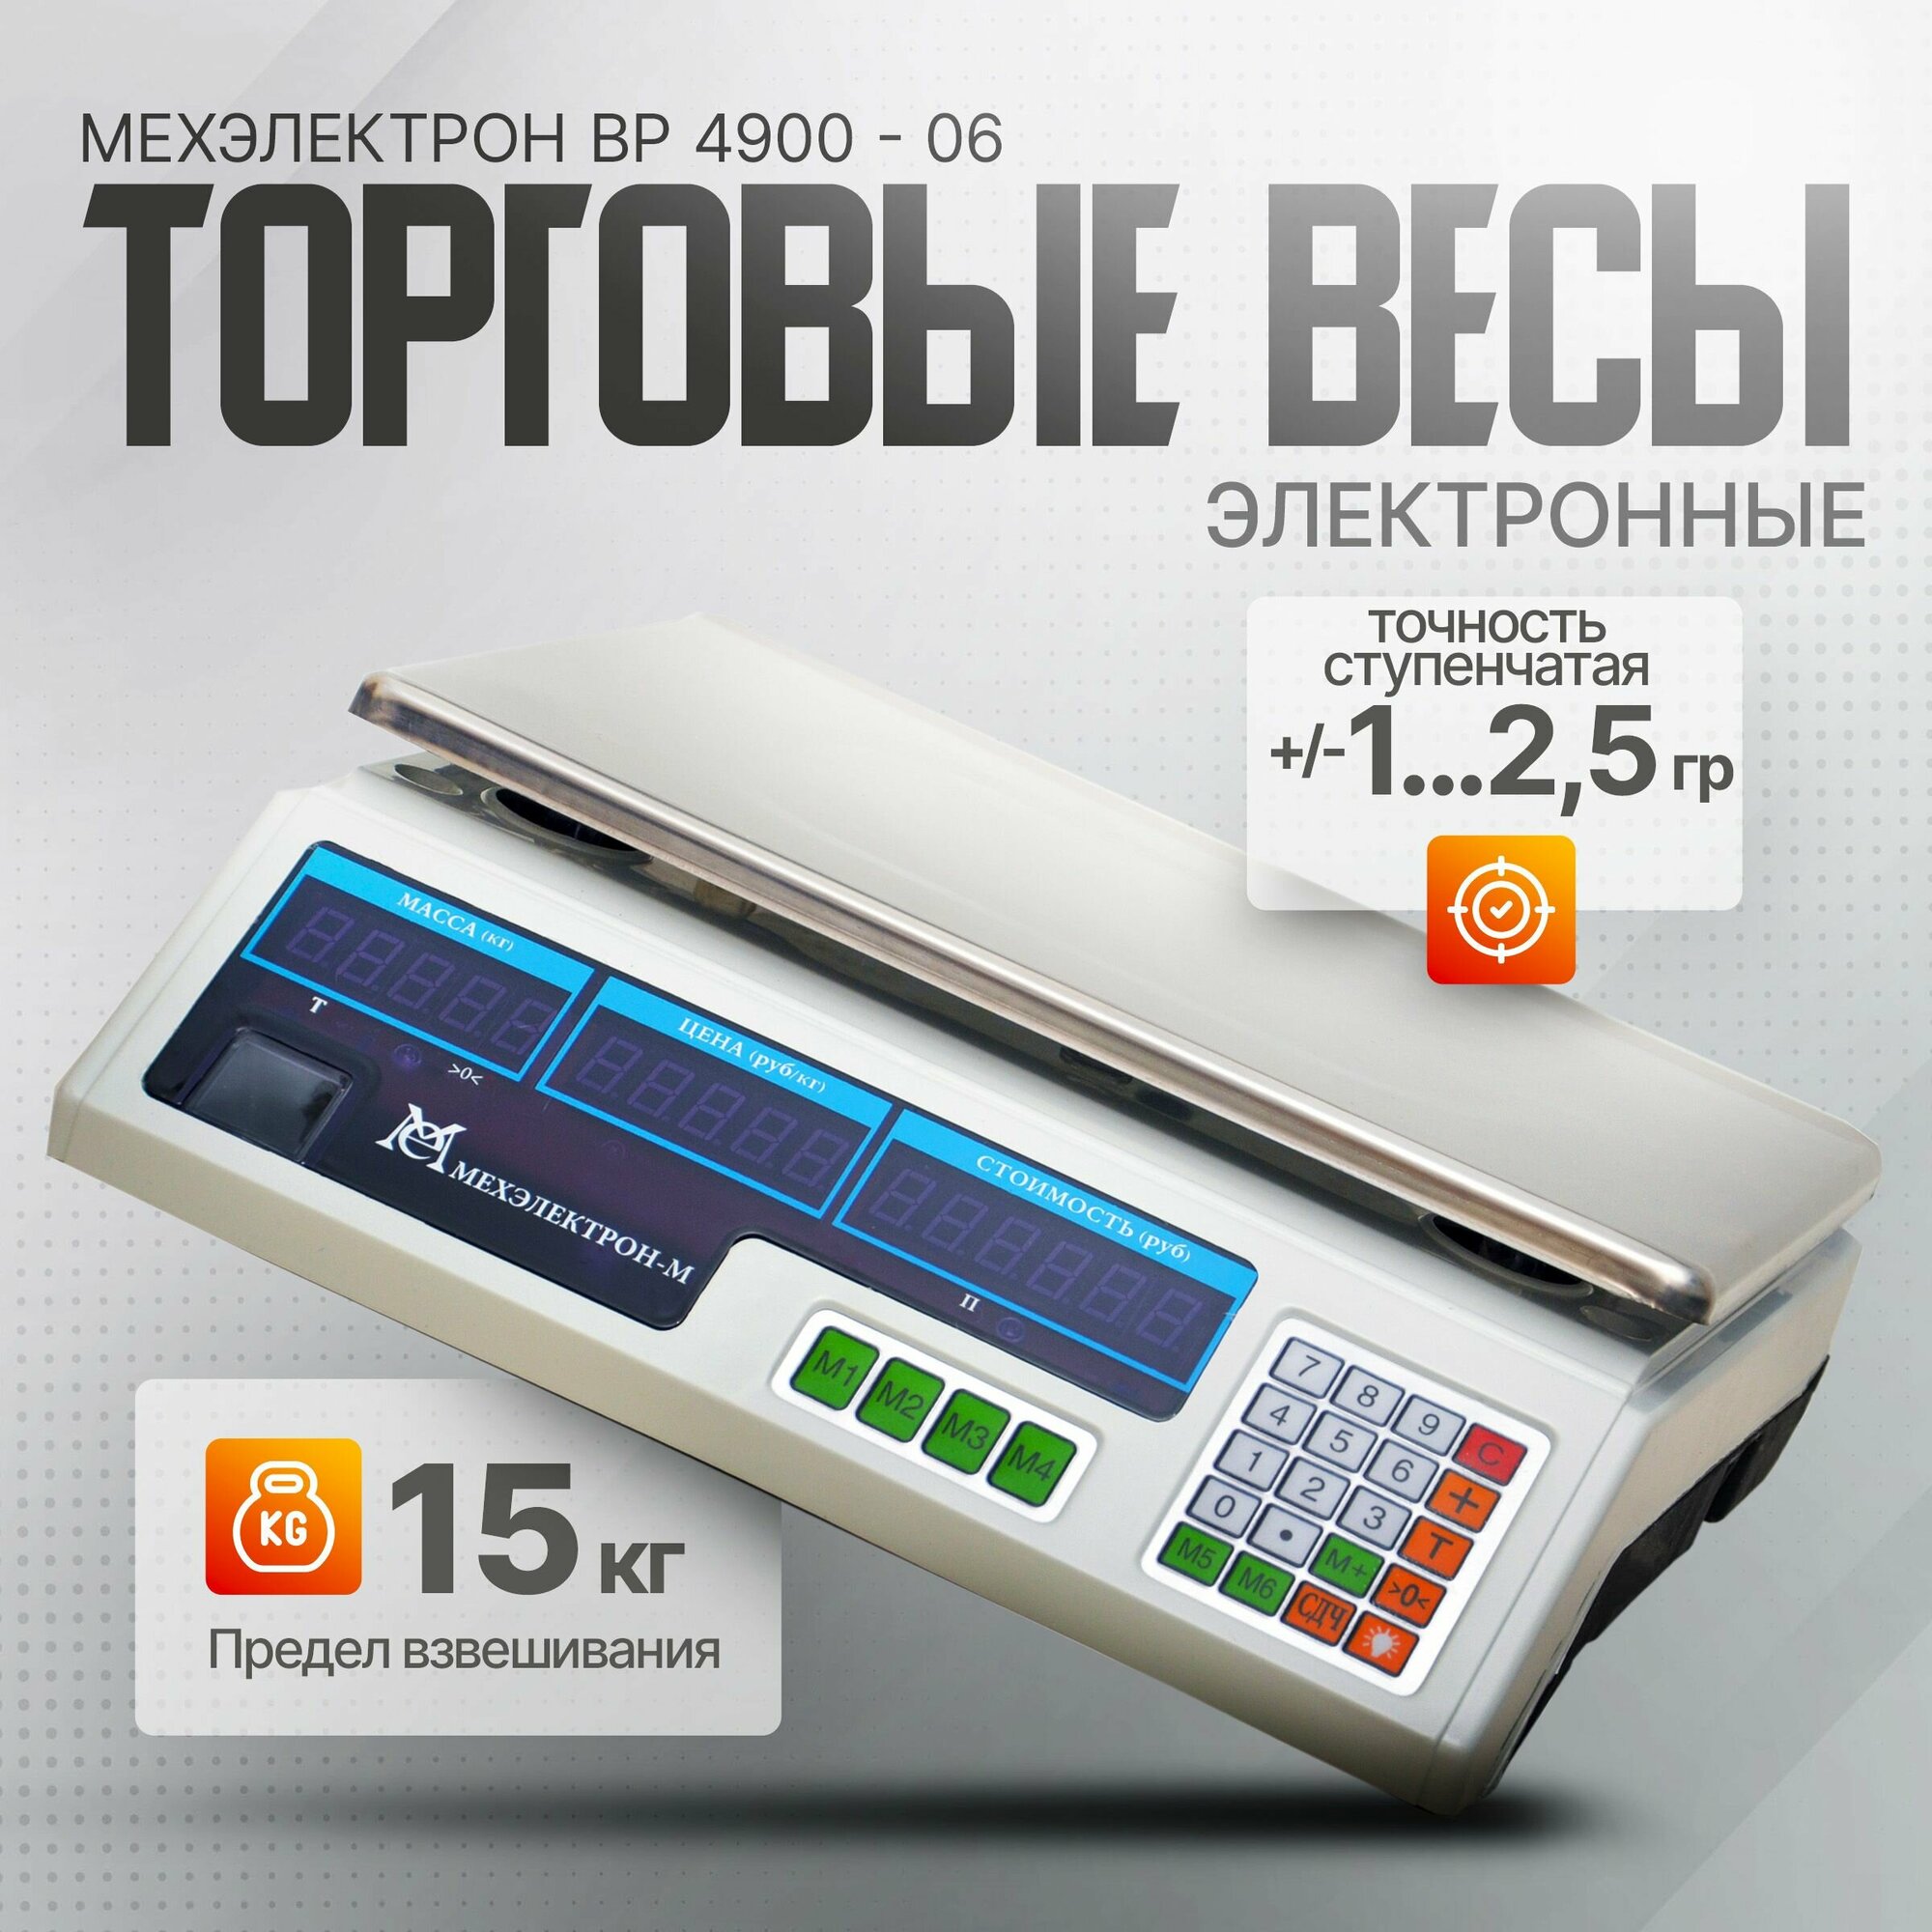 Электронные торговые весы с аккумулятором Мехэлектрон ВР4900-15-ДБ 06 (LED, до 15 кг)